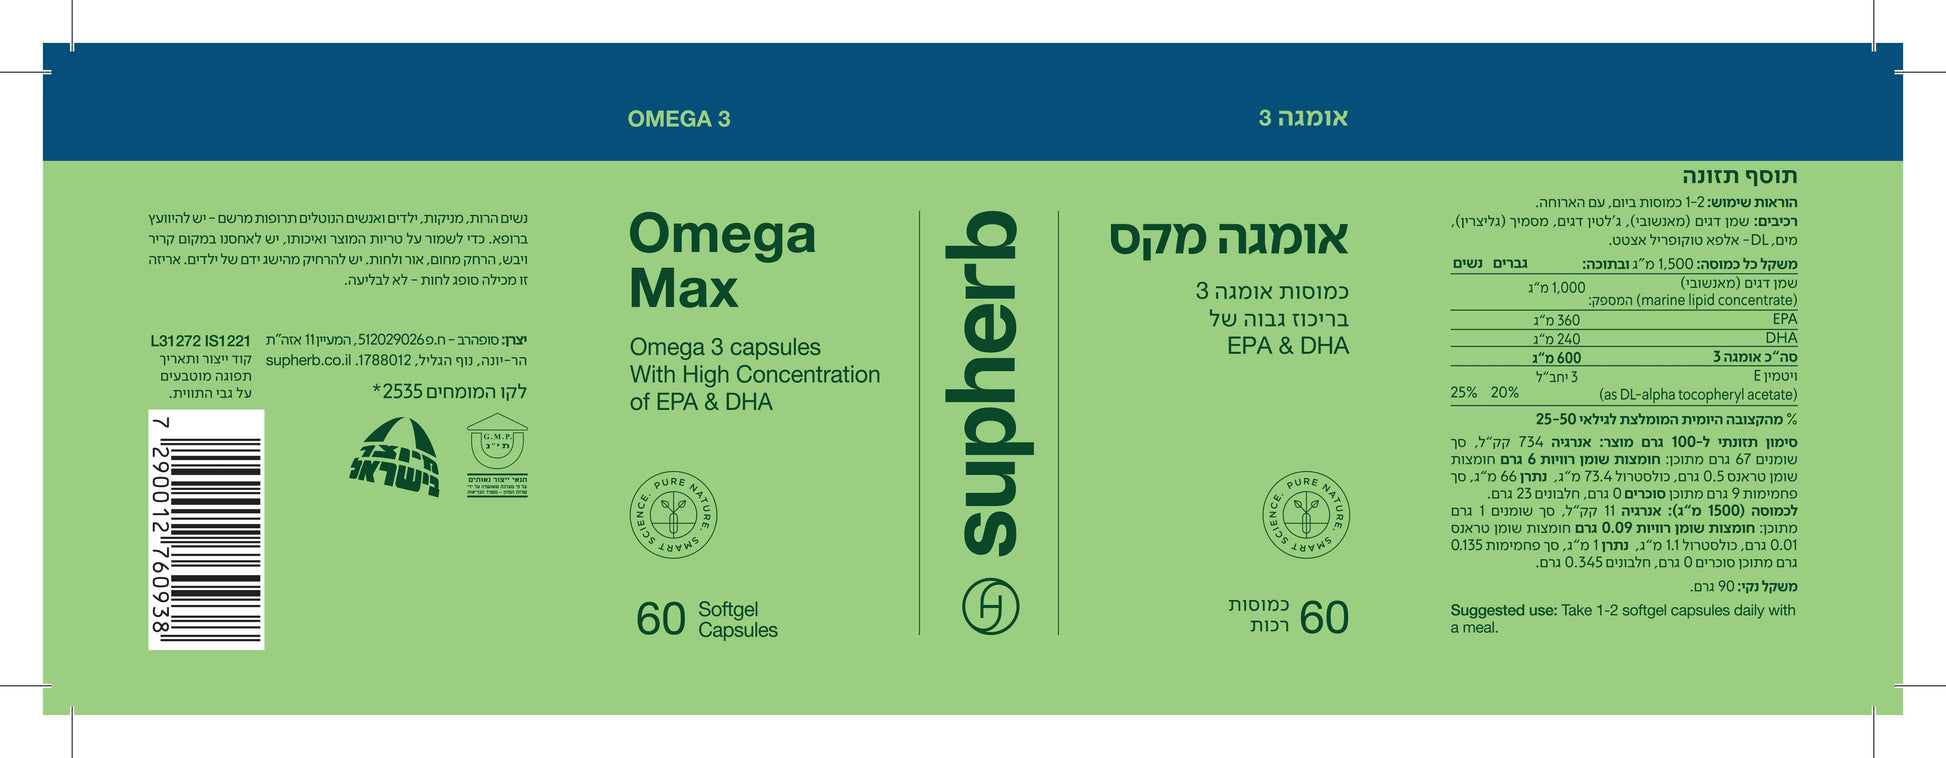 Supherb omega max 60 Capsules